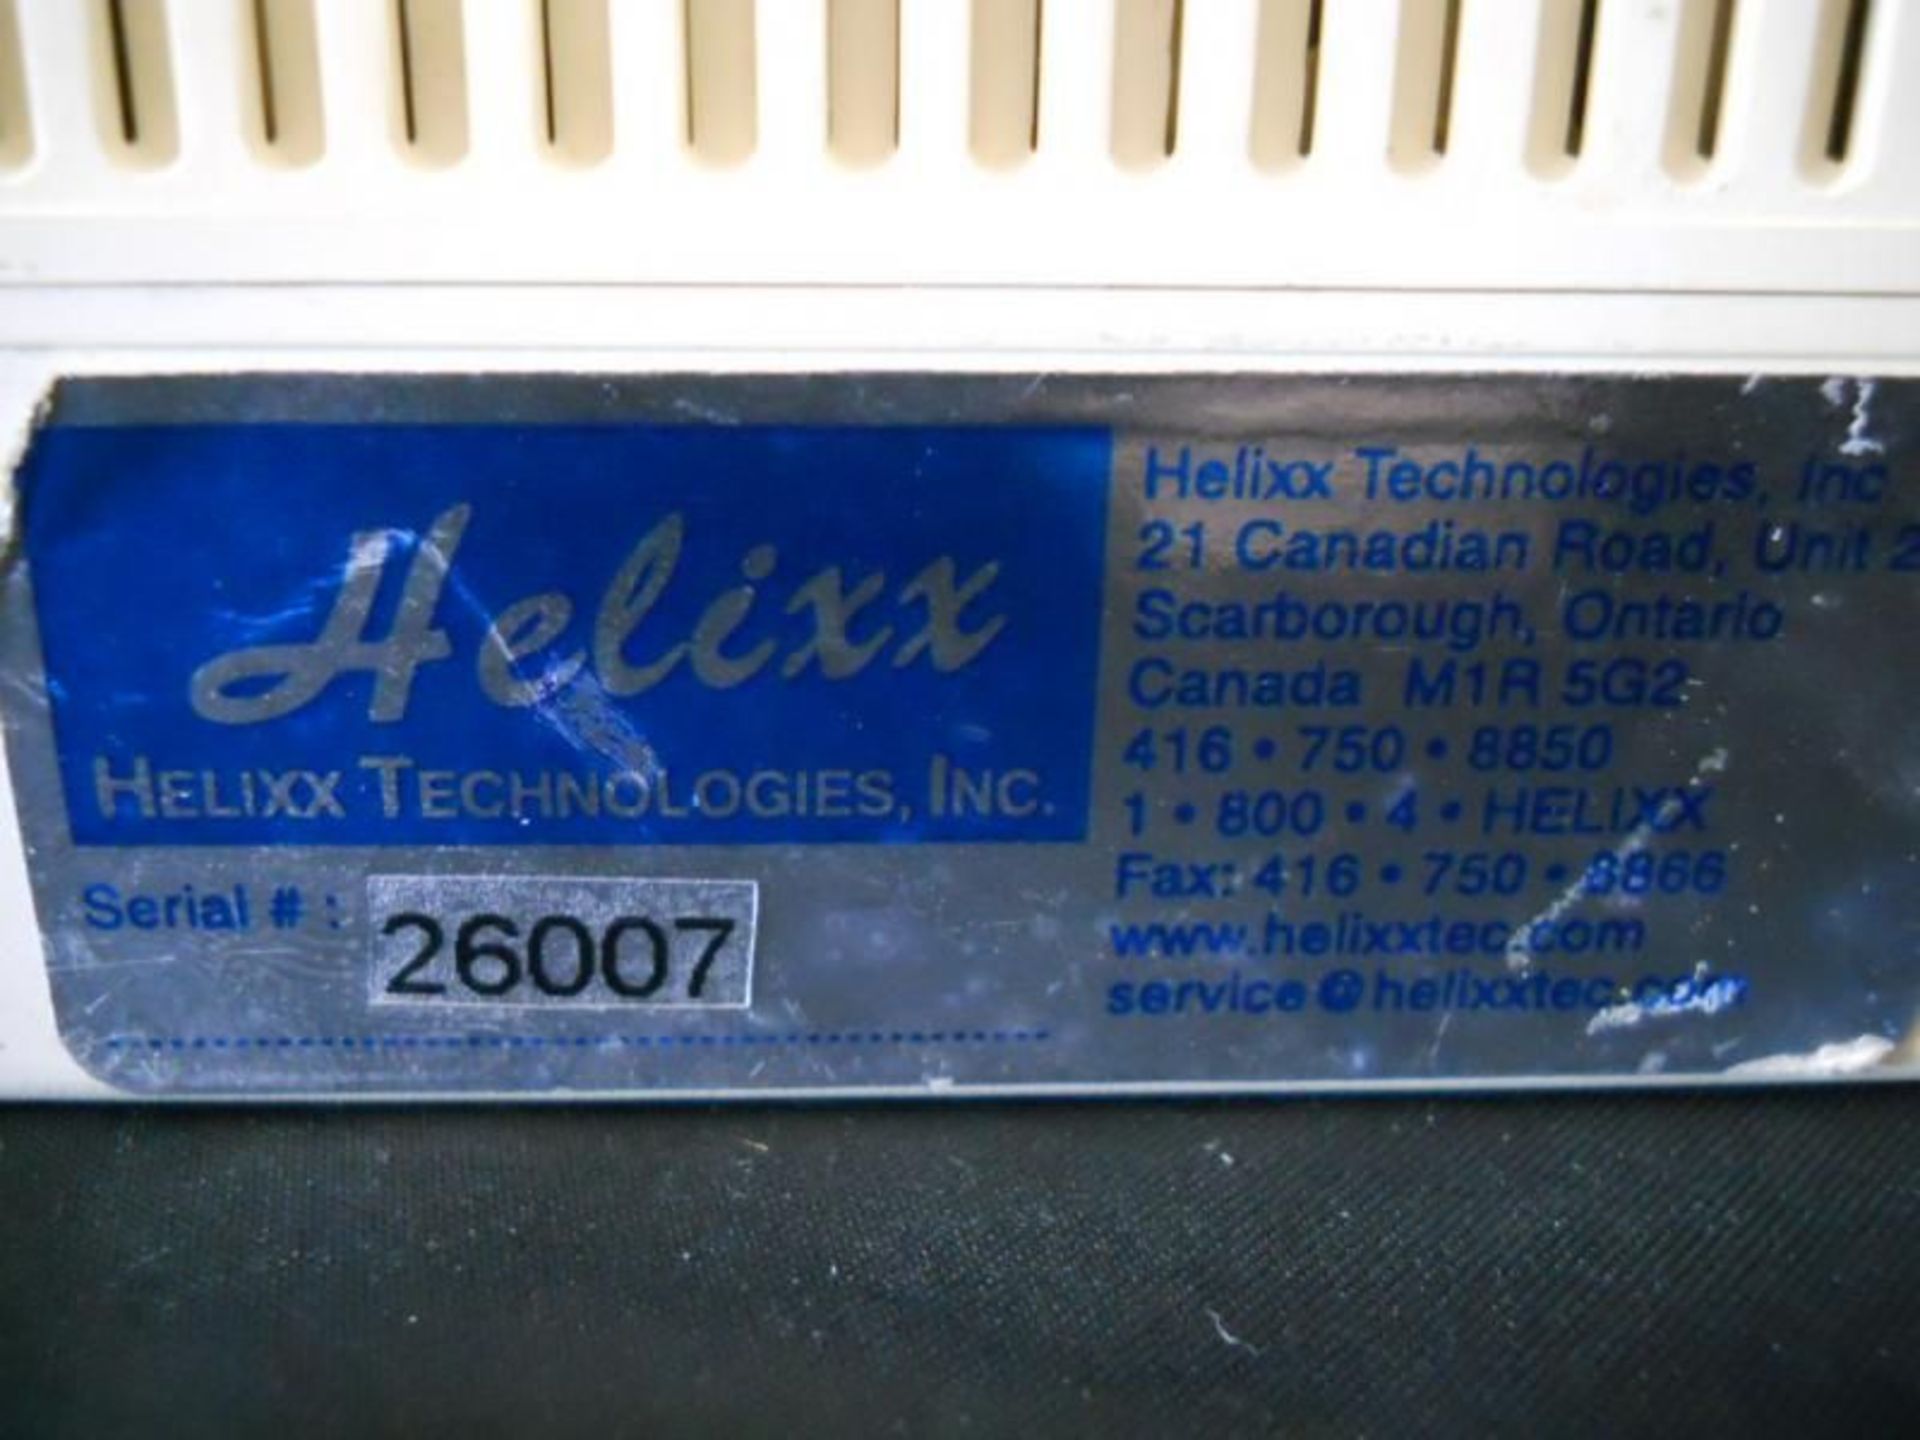 Helixx Technologies I-Mupid (IMupid) Electrophoresis Power Supply, Qty 1, 331020622679 - Image 3 of 6